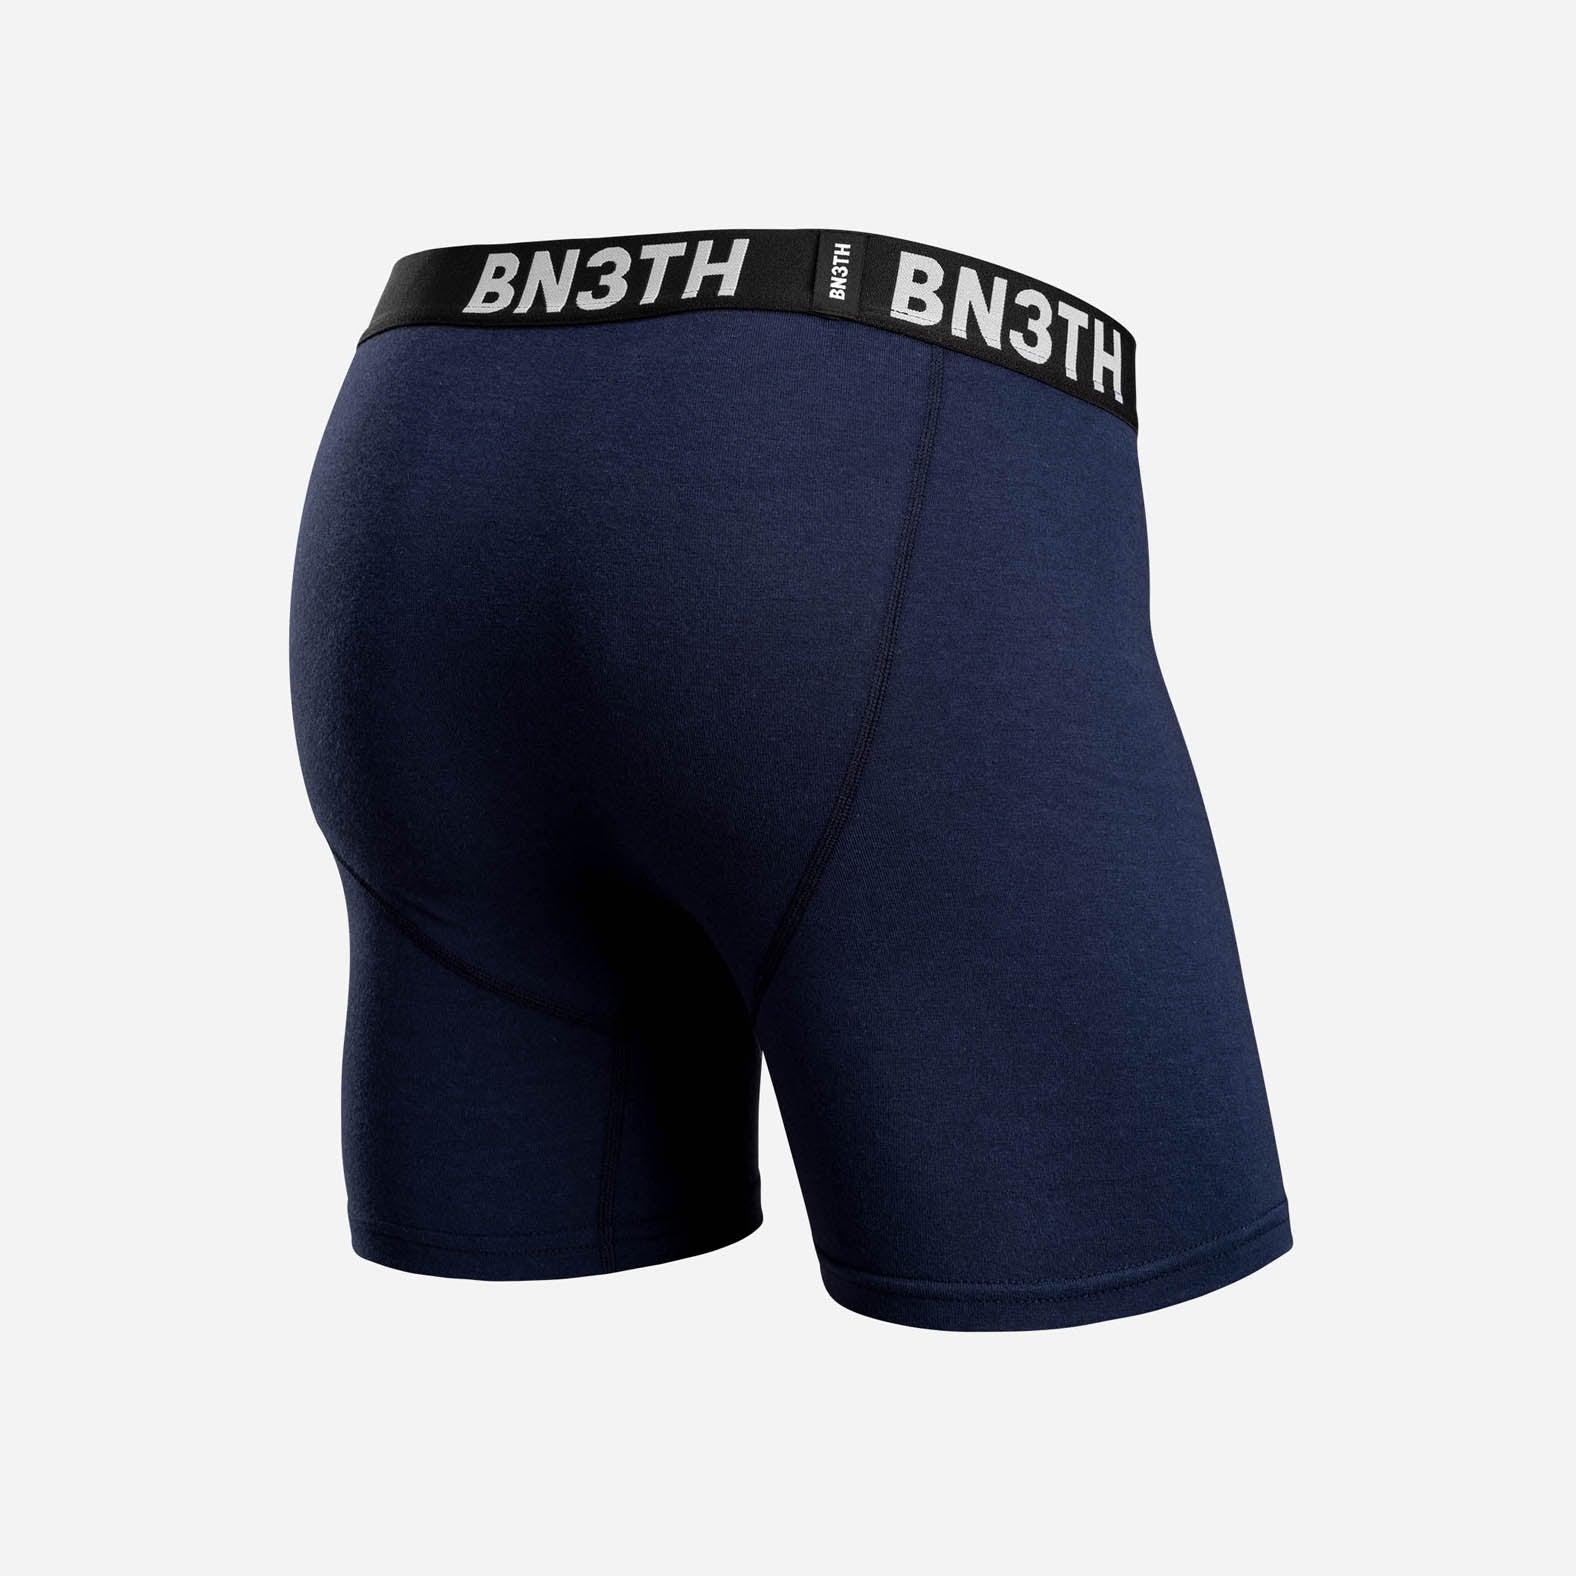 BN3TH Underwear Classic Boxer Brief 2 Pack - Navy & Flower Power - BUNKER